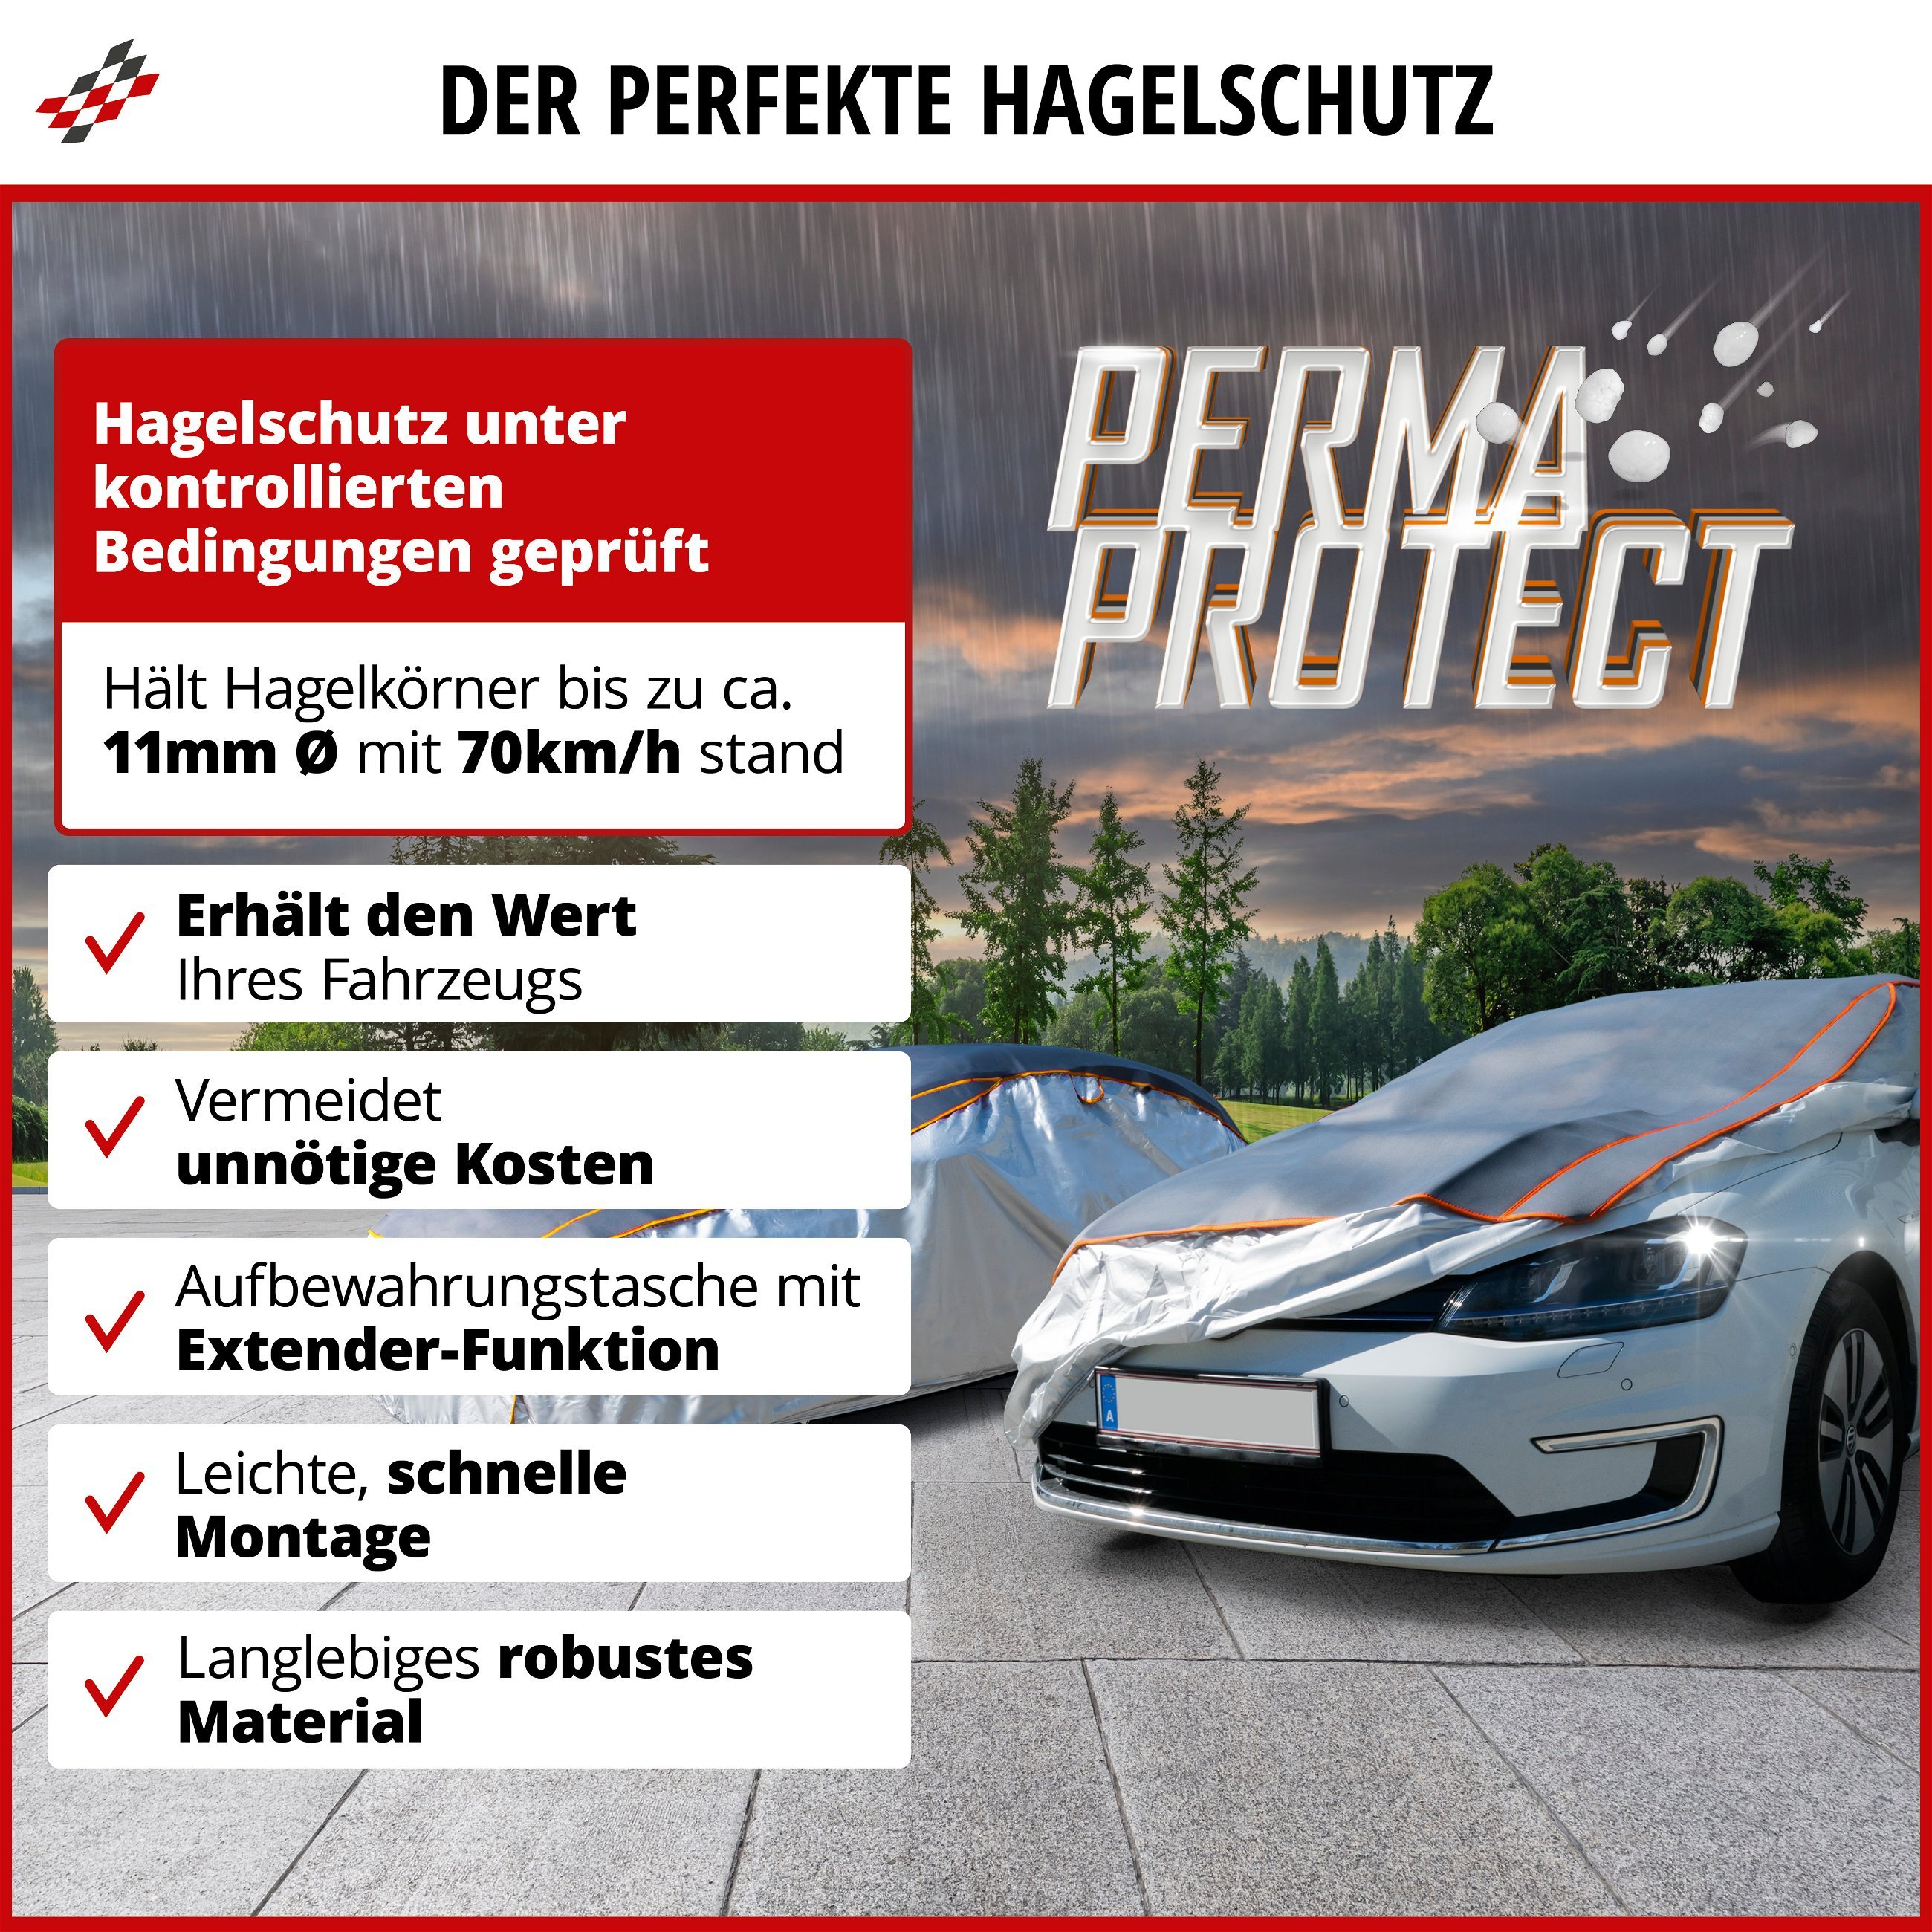 SUV Hagelschutzplane Perma Protect, Hagelschutzgarage Größe L